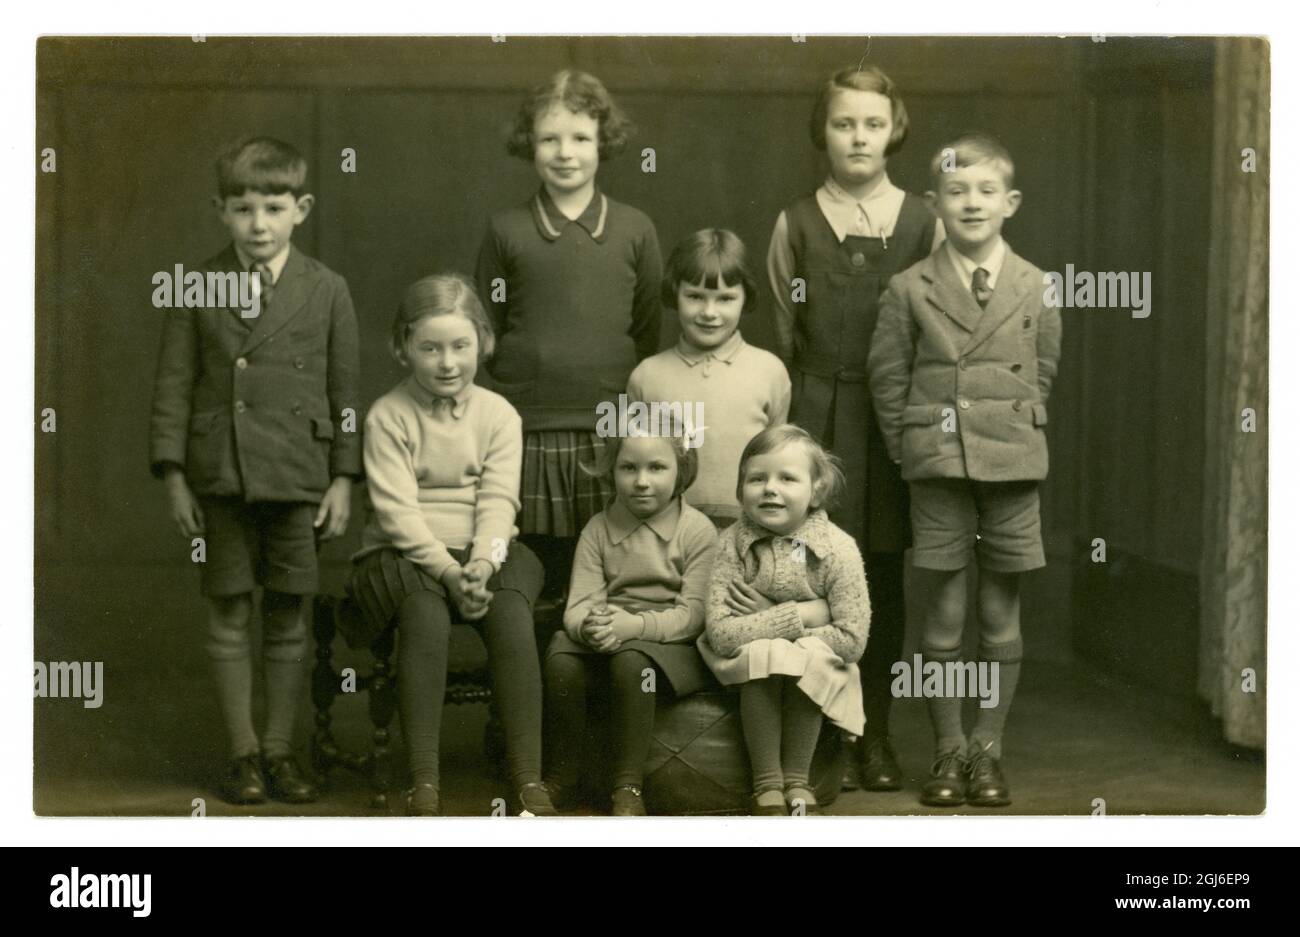 Image originale très claire de la carte postale de portrait de studio des années 1930 de 8 enfants, frères et sœurs ou cousins, uniformes scolaires, Lincoln, Angleterre,Royaume-Uni vers 1935 Banque D'Images